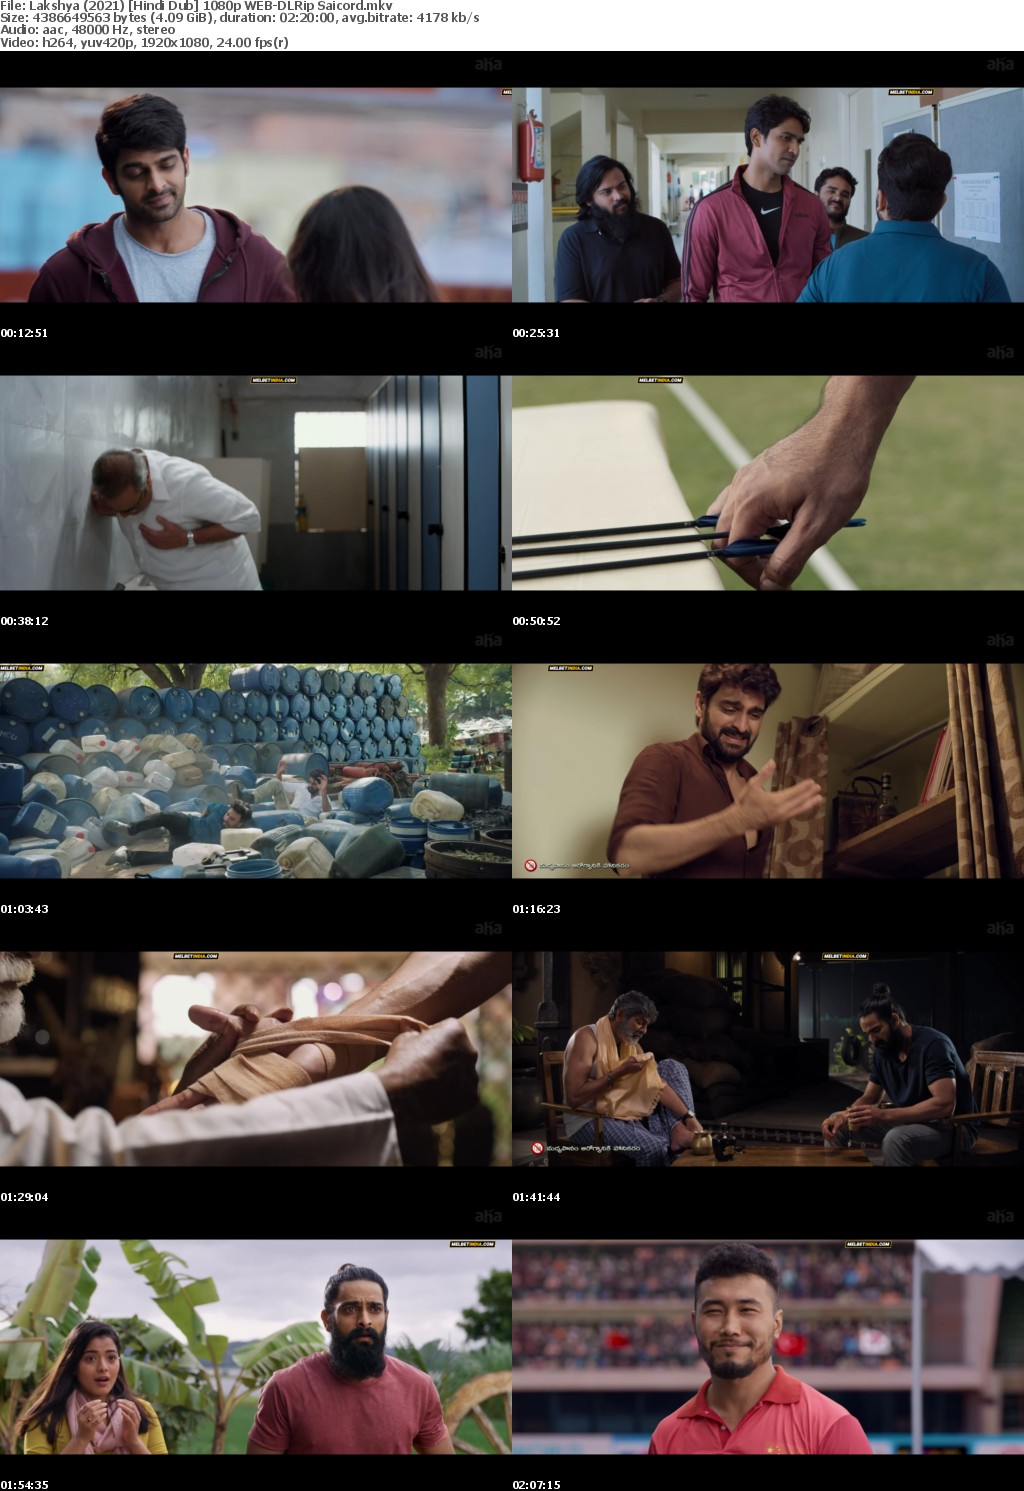 Lakshya (2021) Hindi Dub 1080p WEB-DLRip Saicord